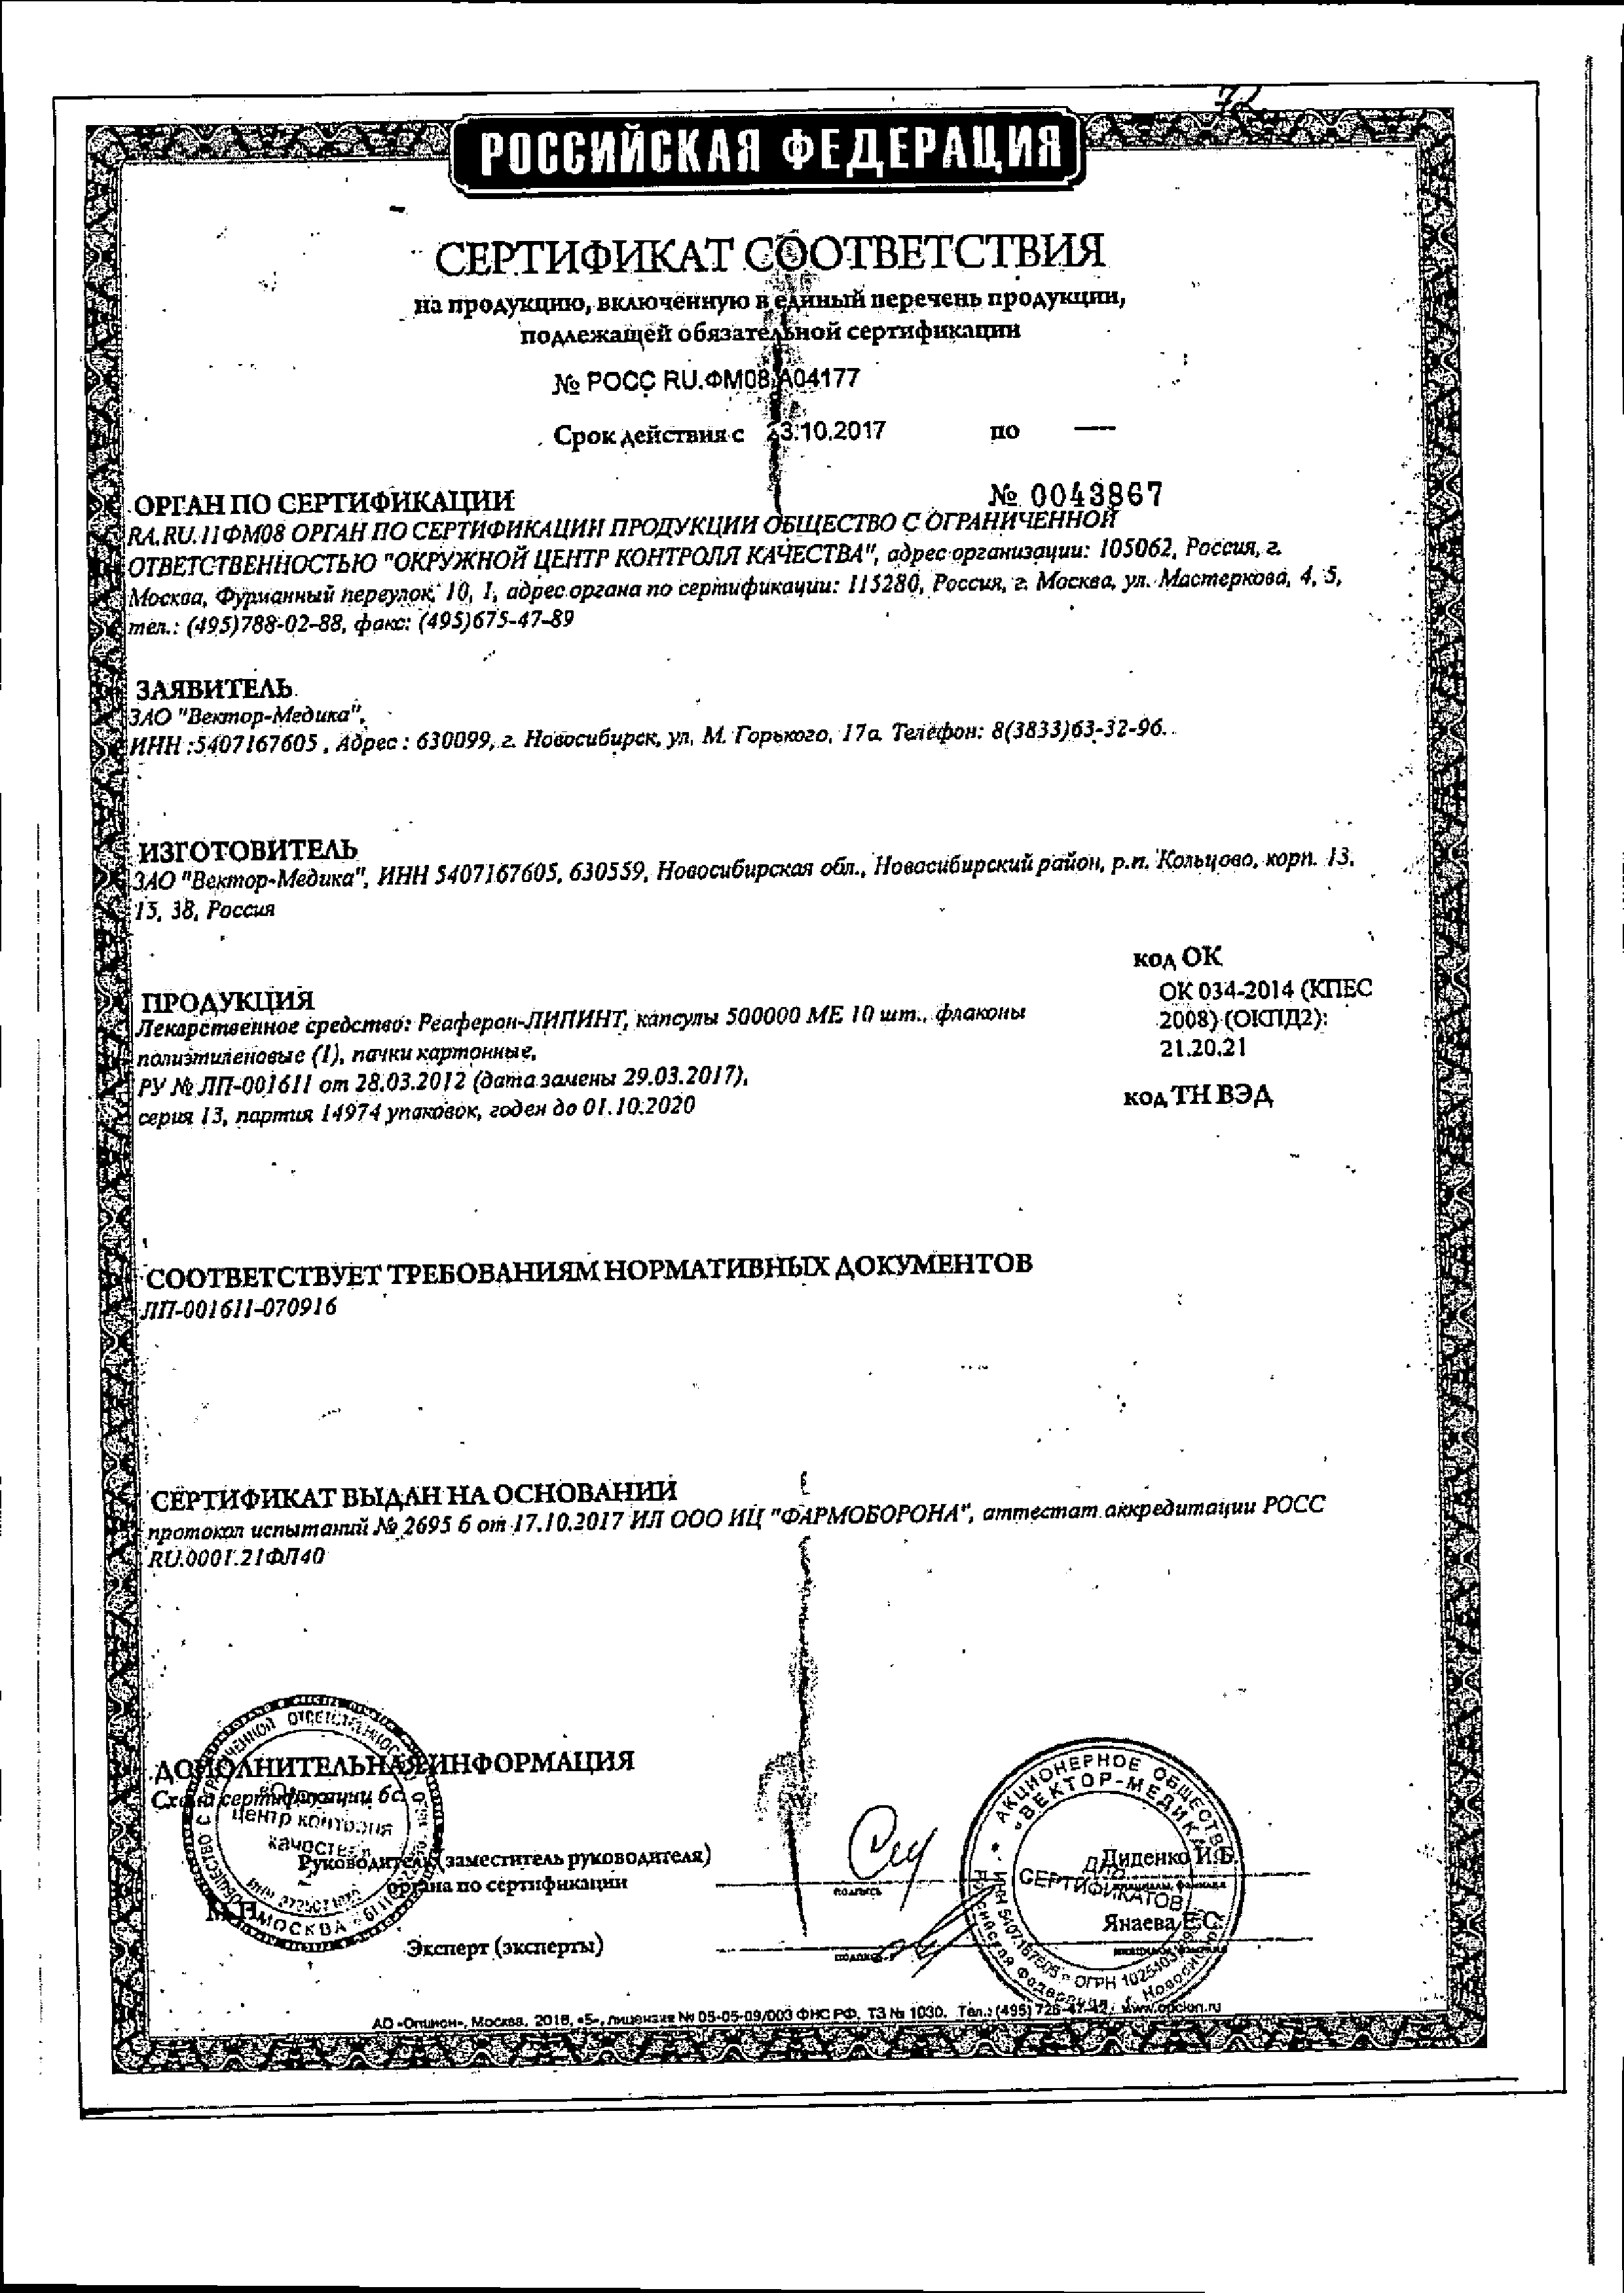 Реаферон-Липинт сертификат